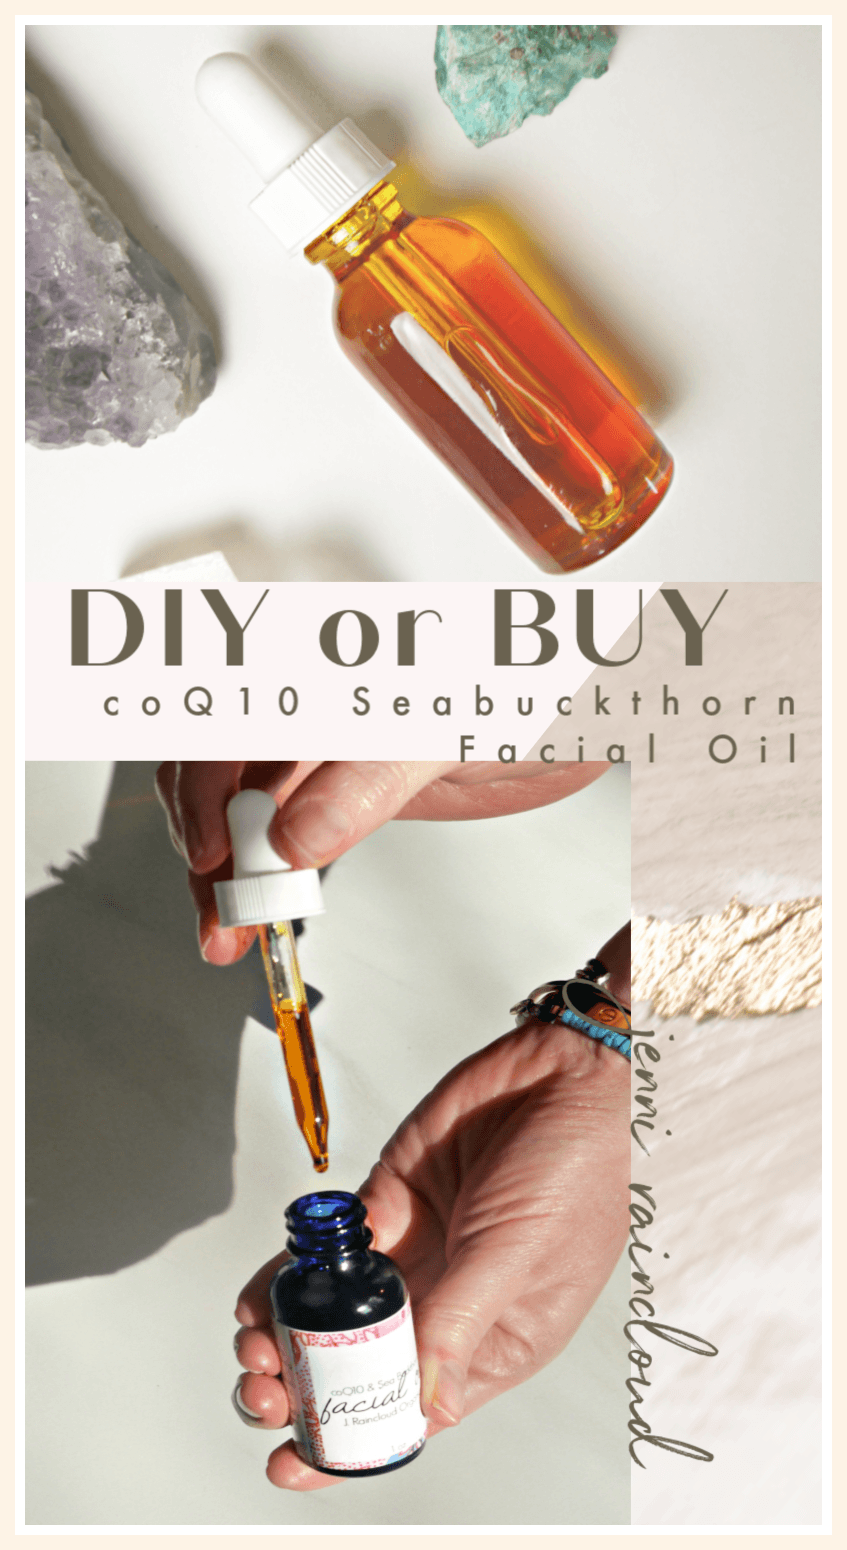 DIY or BUY Facial Oil